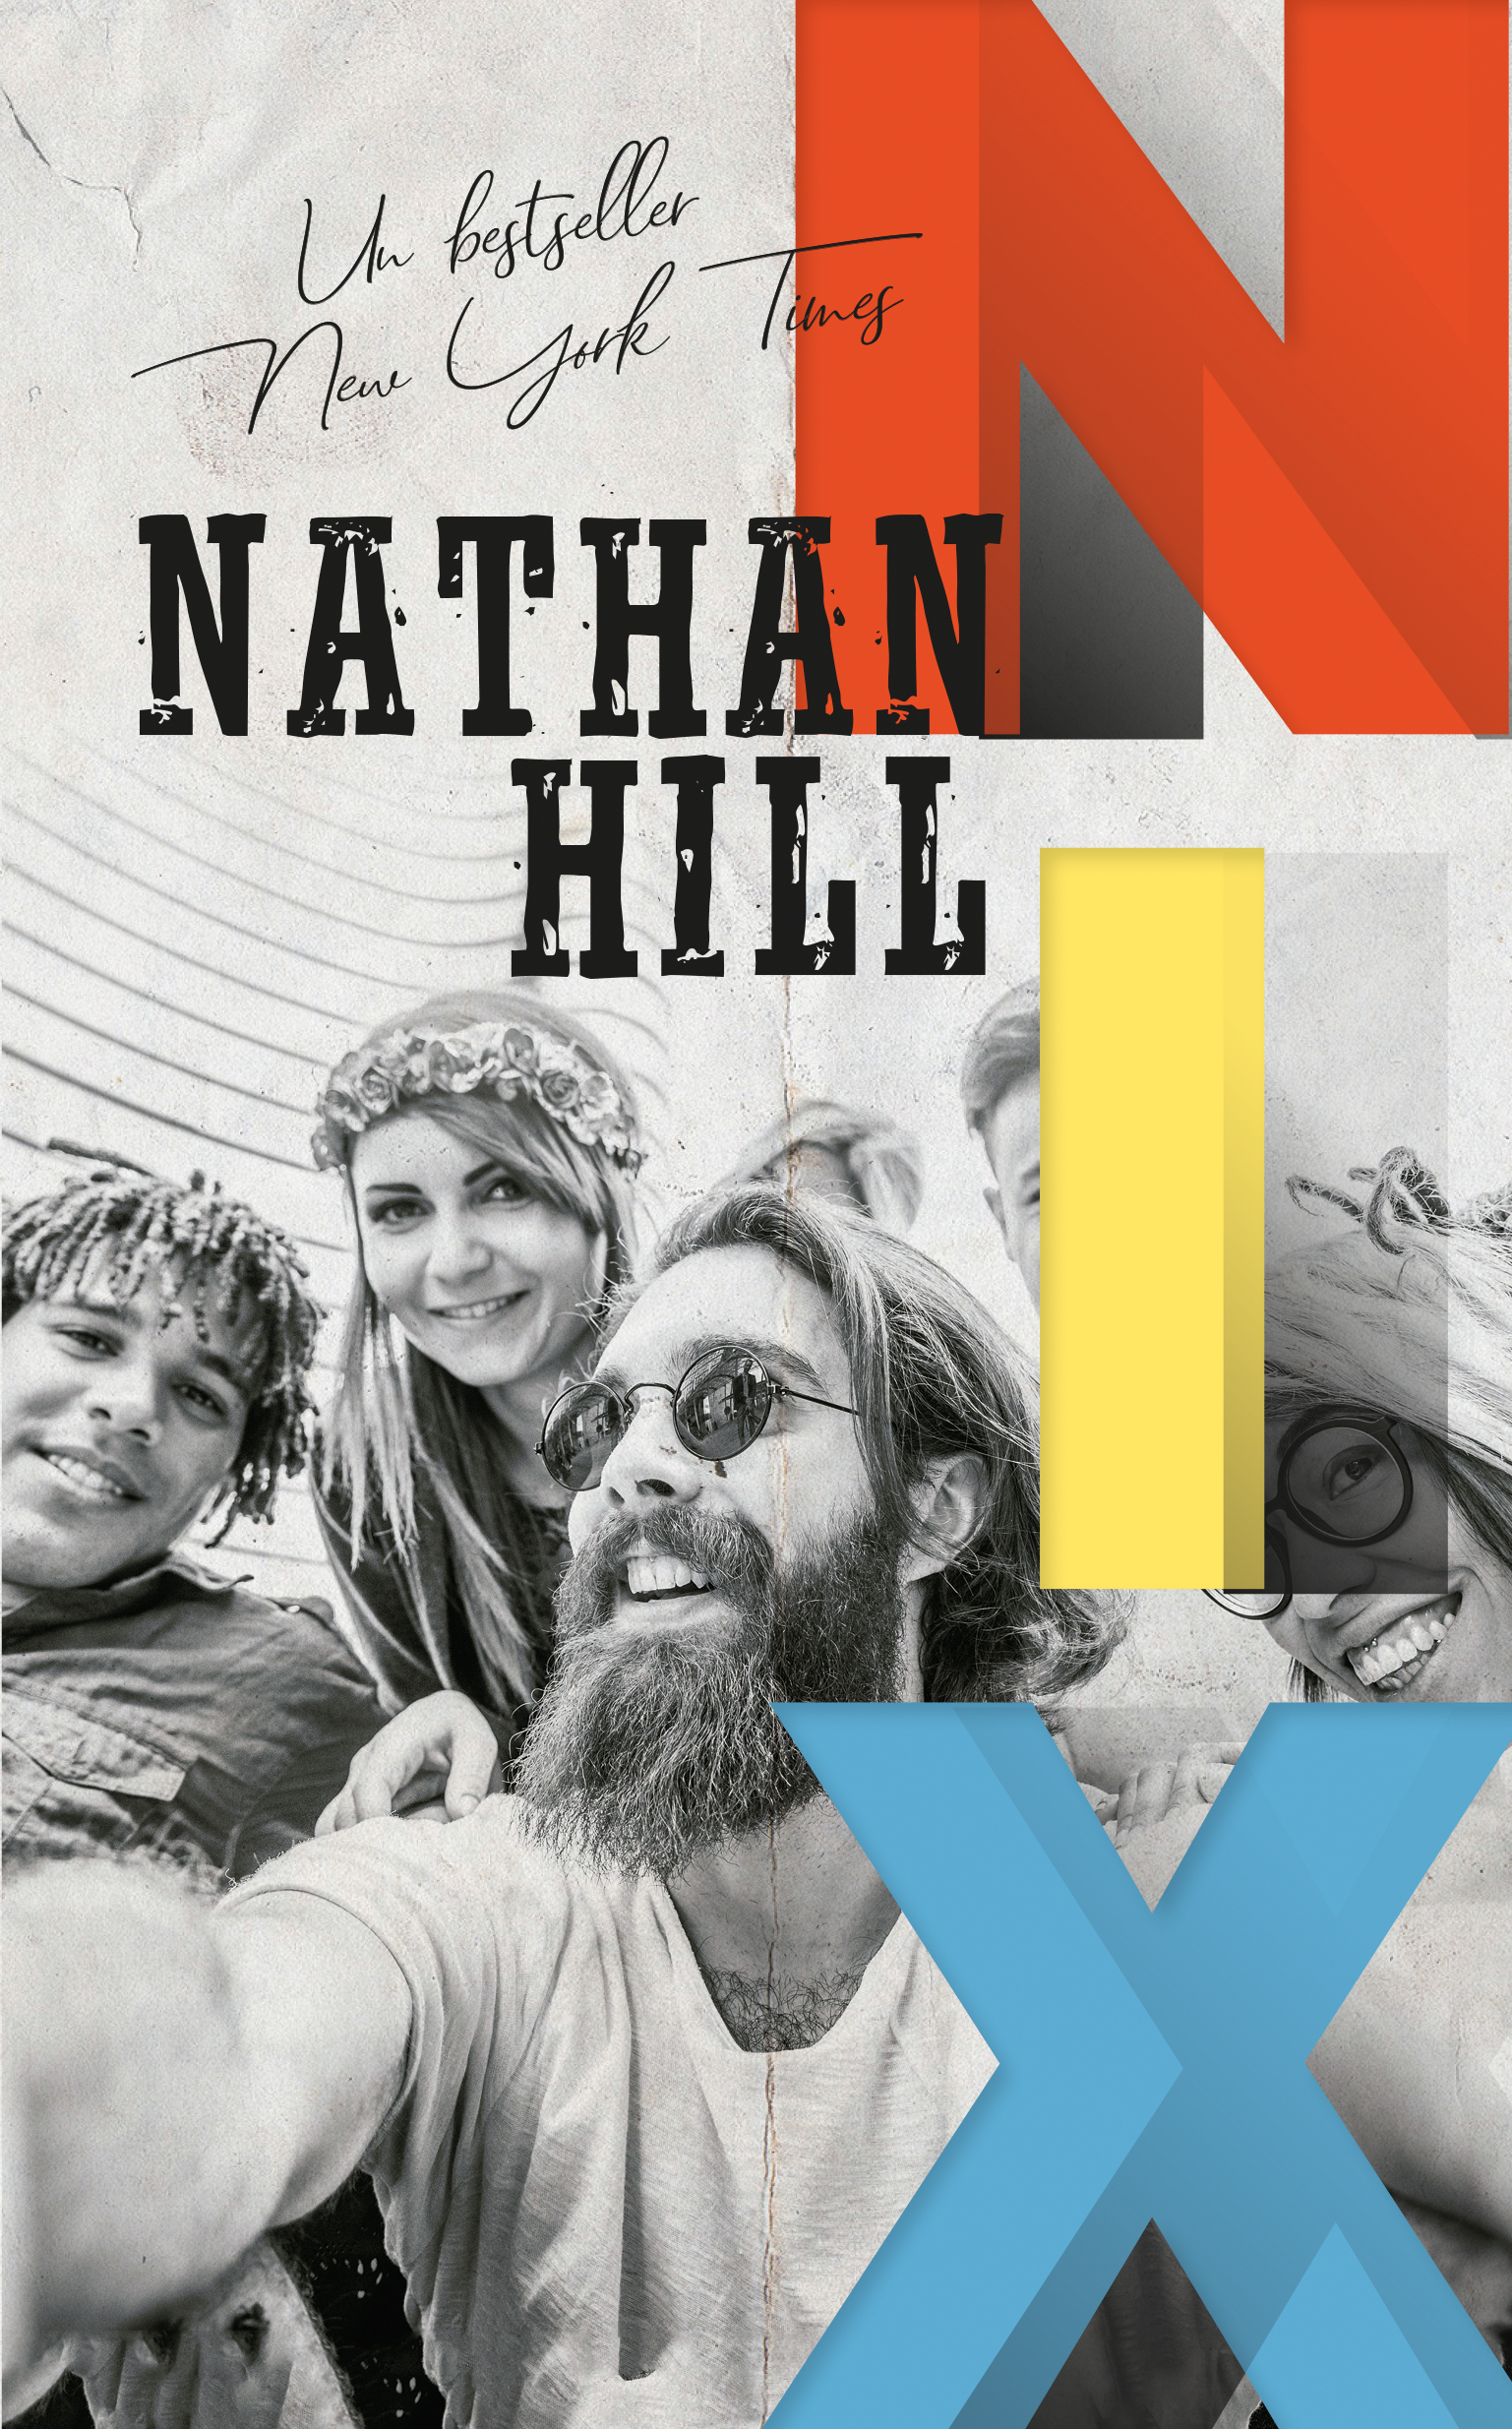 Nix - Nathan Hill